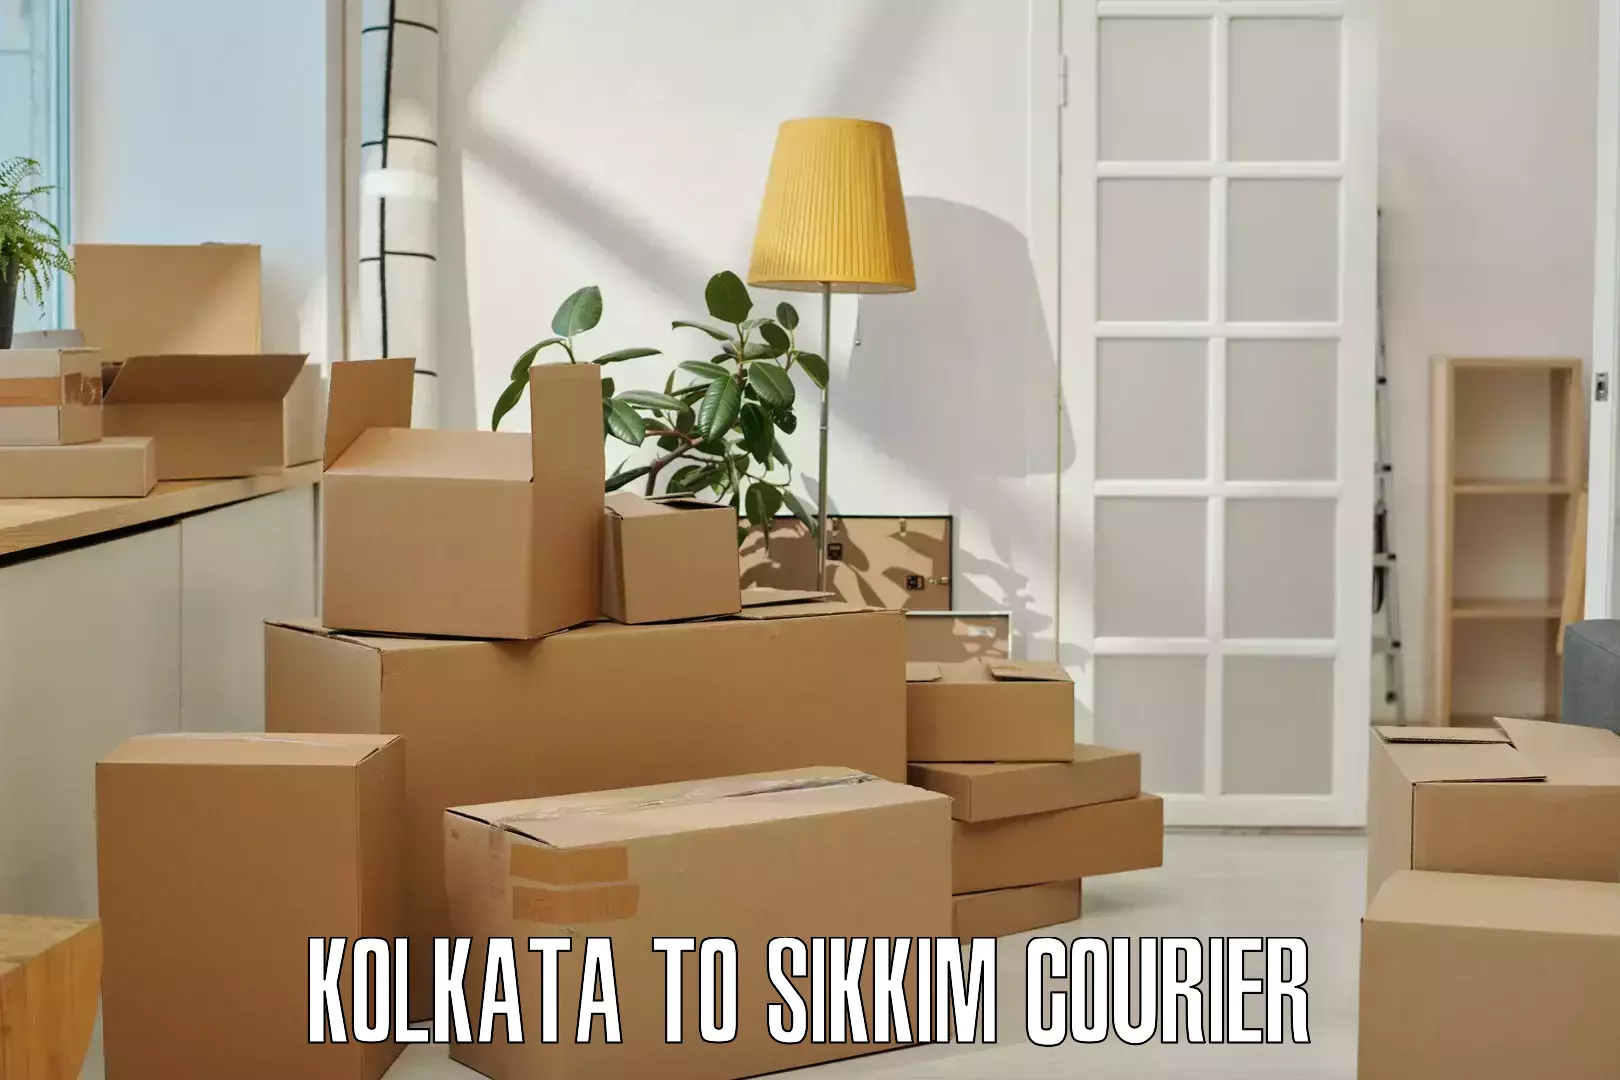 Door-to-door shipment Kolkata to North Sikkim